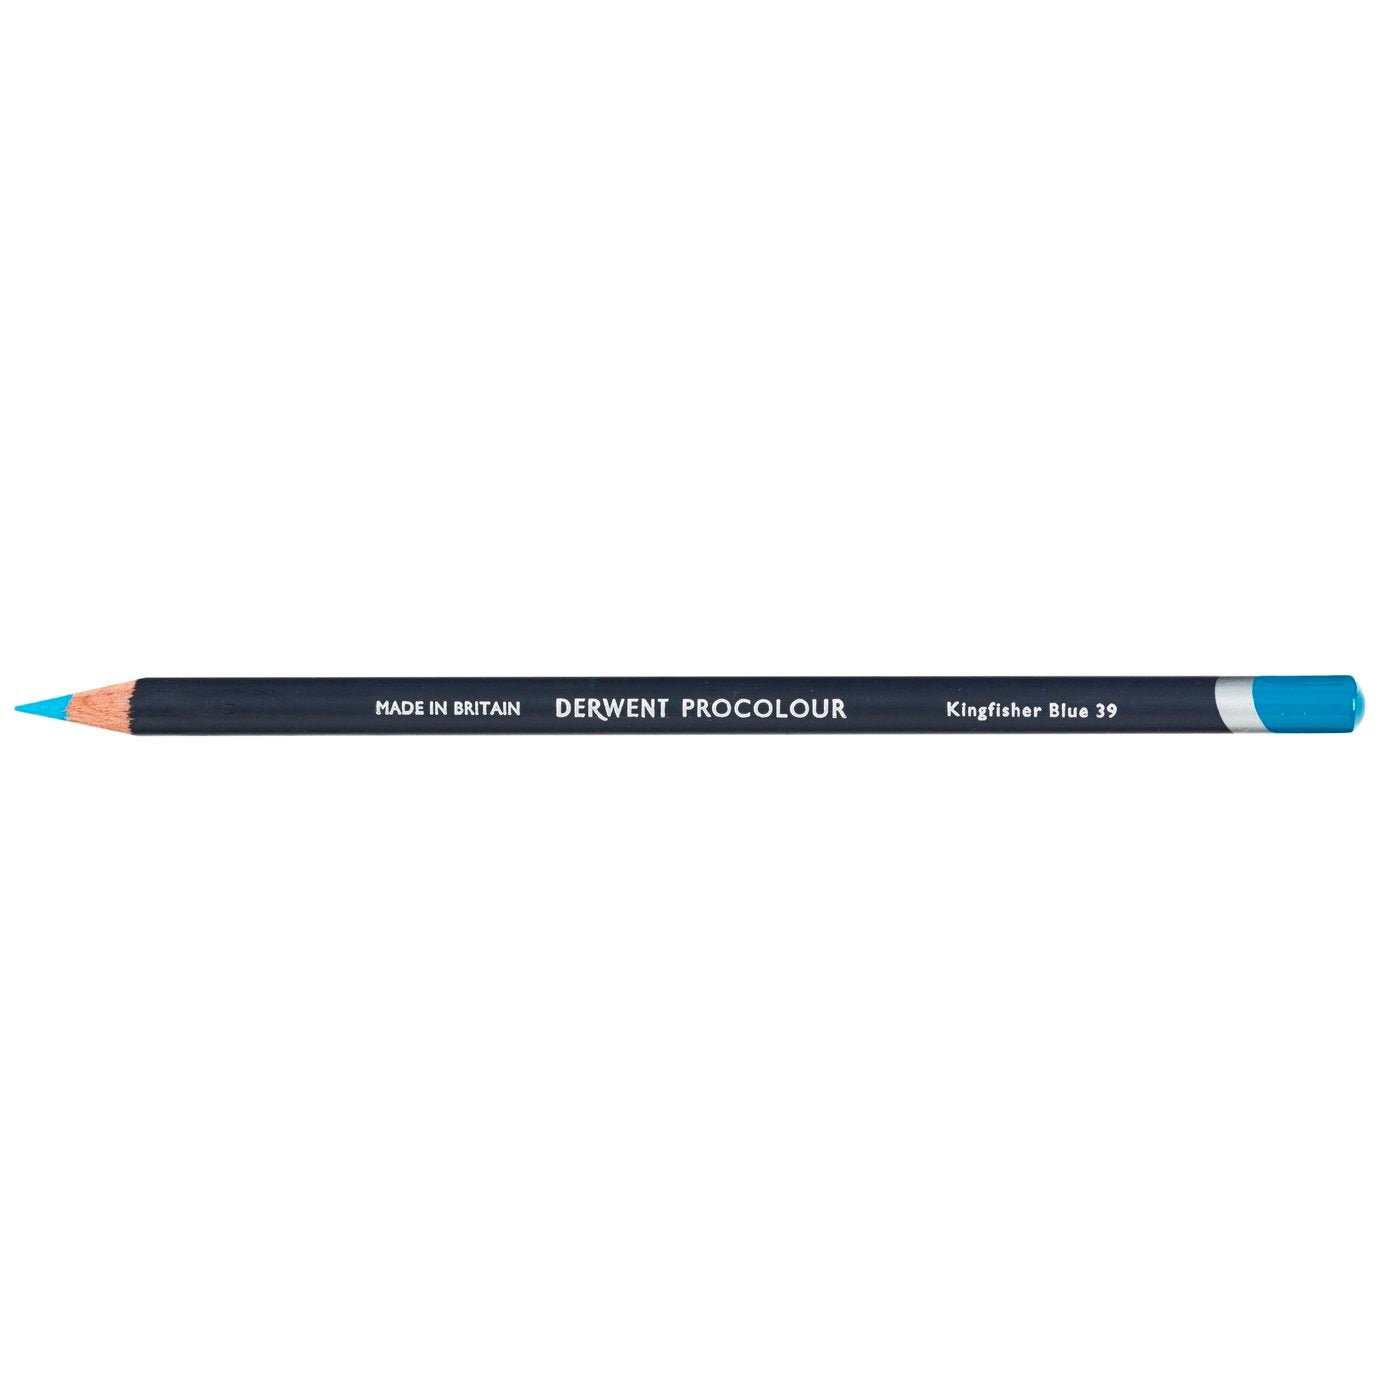 Derwent Procolour Pencil Kingfisher Blue 39 - theartshop.com.au